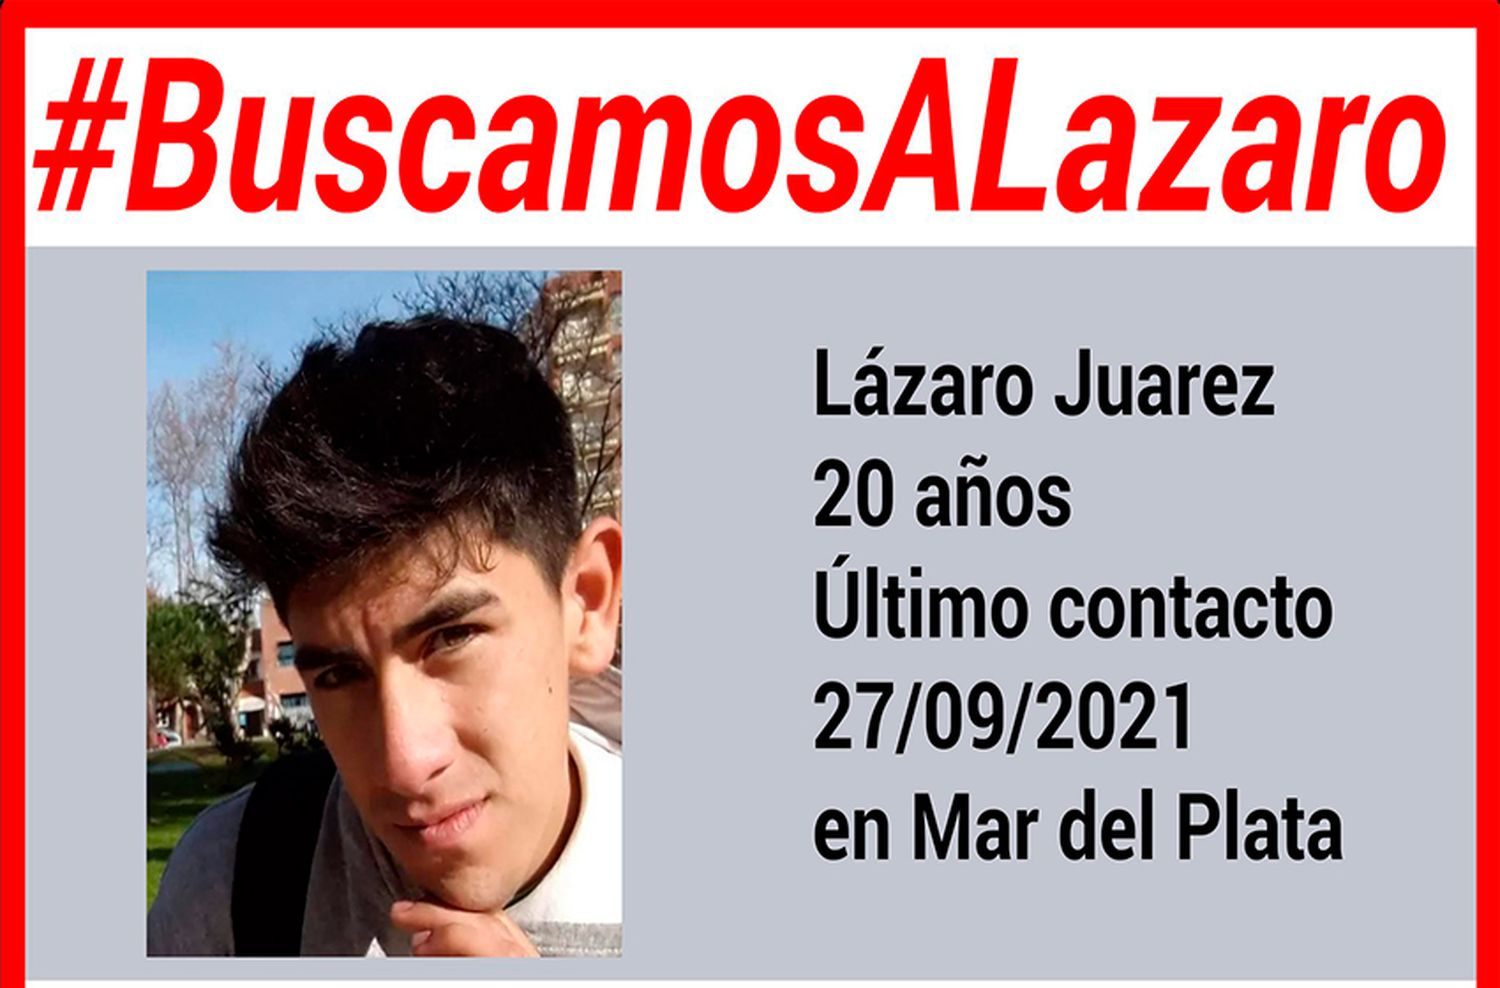 Buscan a Lázaro Juárez, desapareció en Mar del plata